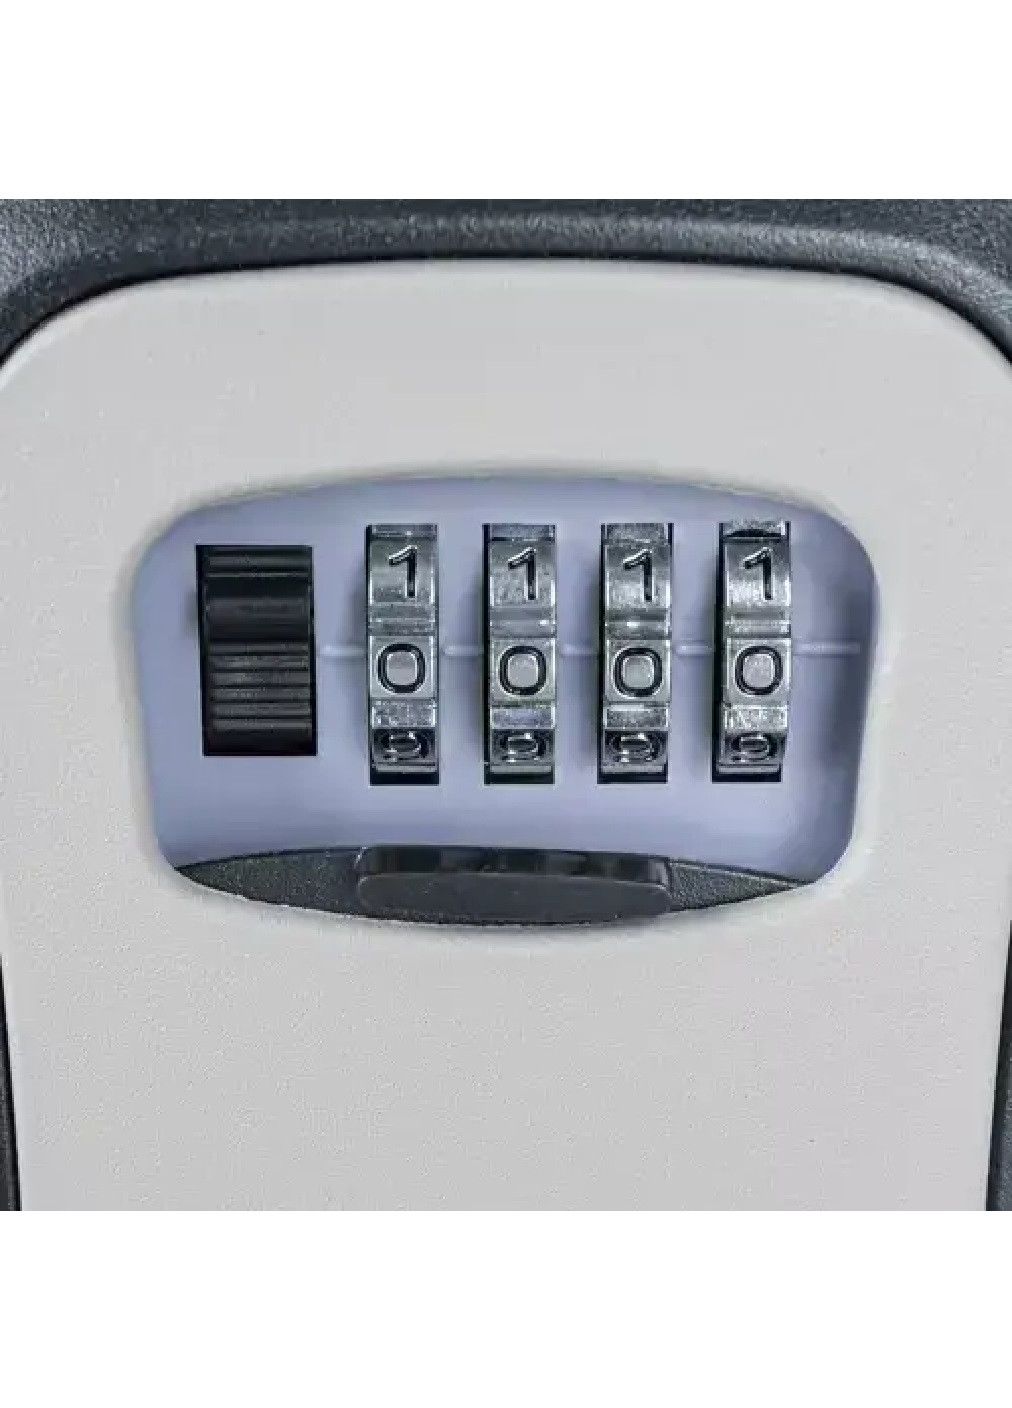 Мебельный компактный портативный металлический сейф ключница ящик для ключей 12х9х4 см (475759-Prob) Серый с черным Unbranded (271039201)